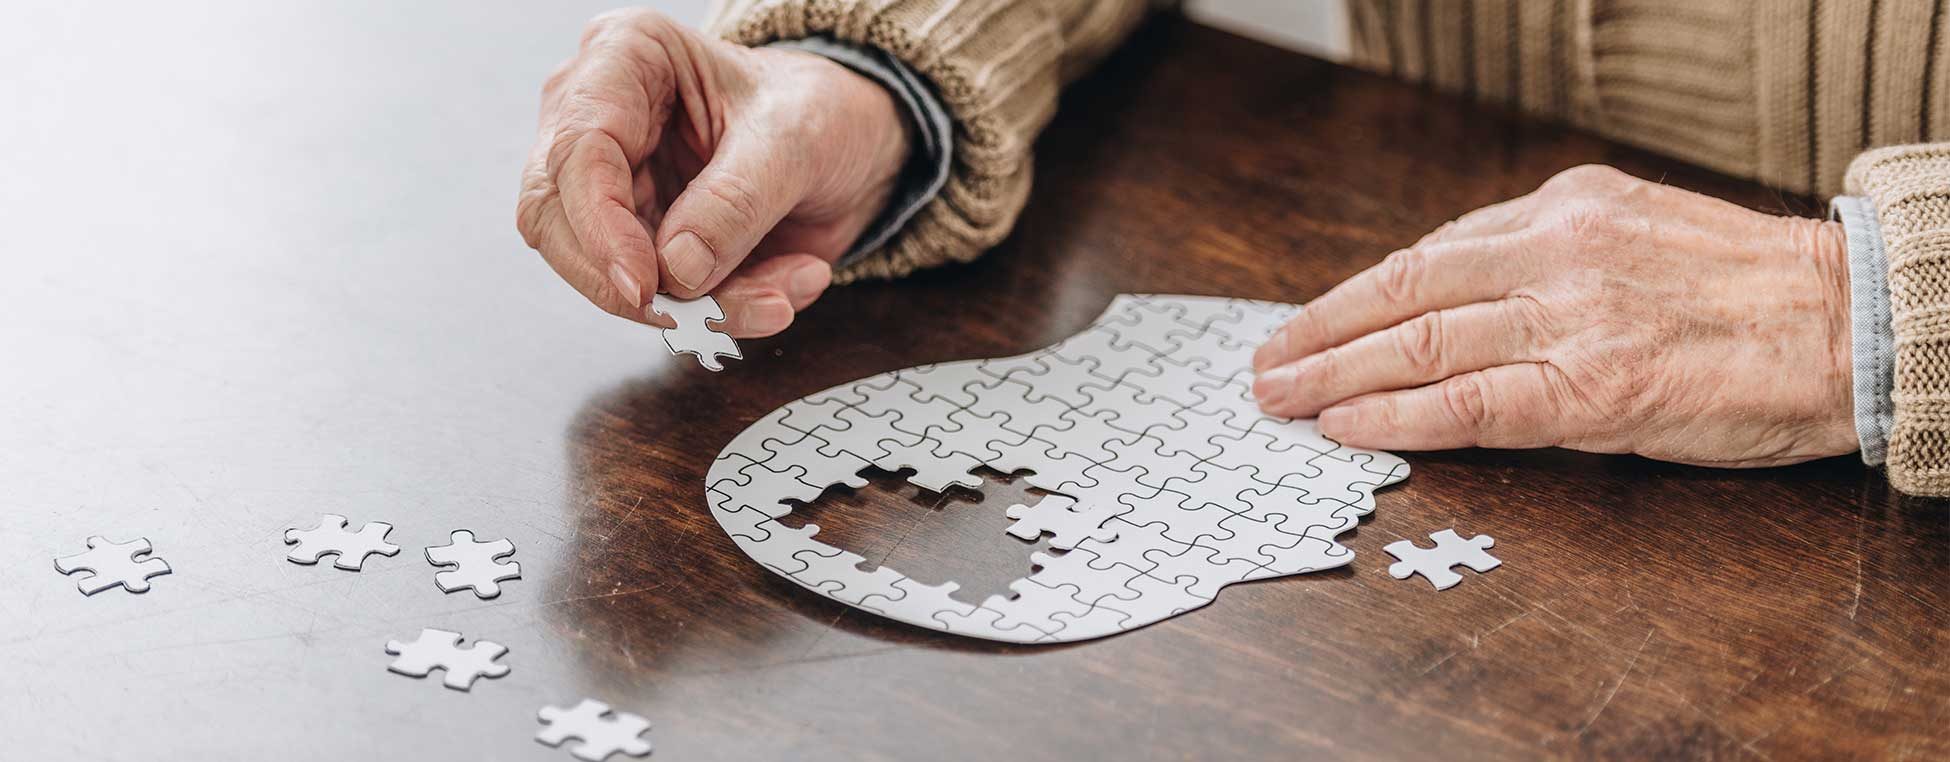 Hände einer älteren Person, die einen Menschenkopf puzzelt; der mittlere Teil des Kopfes ist ohne Puzzleteile